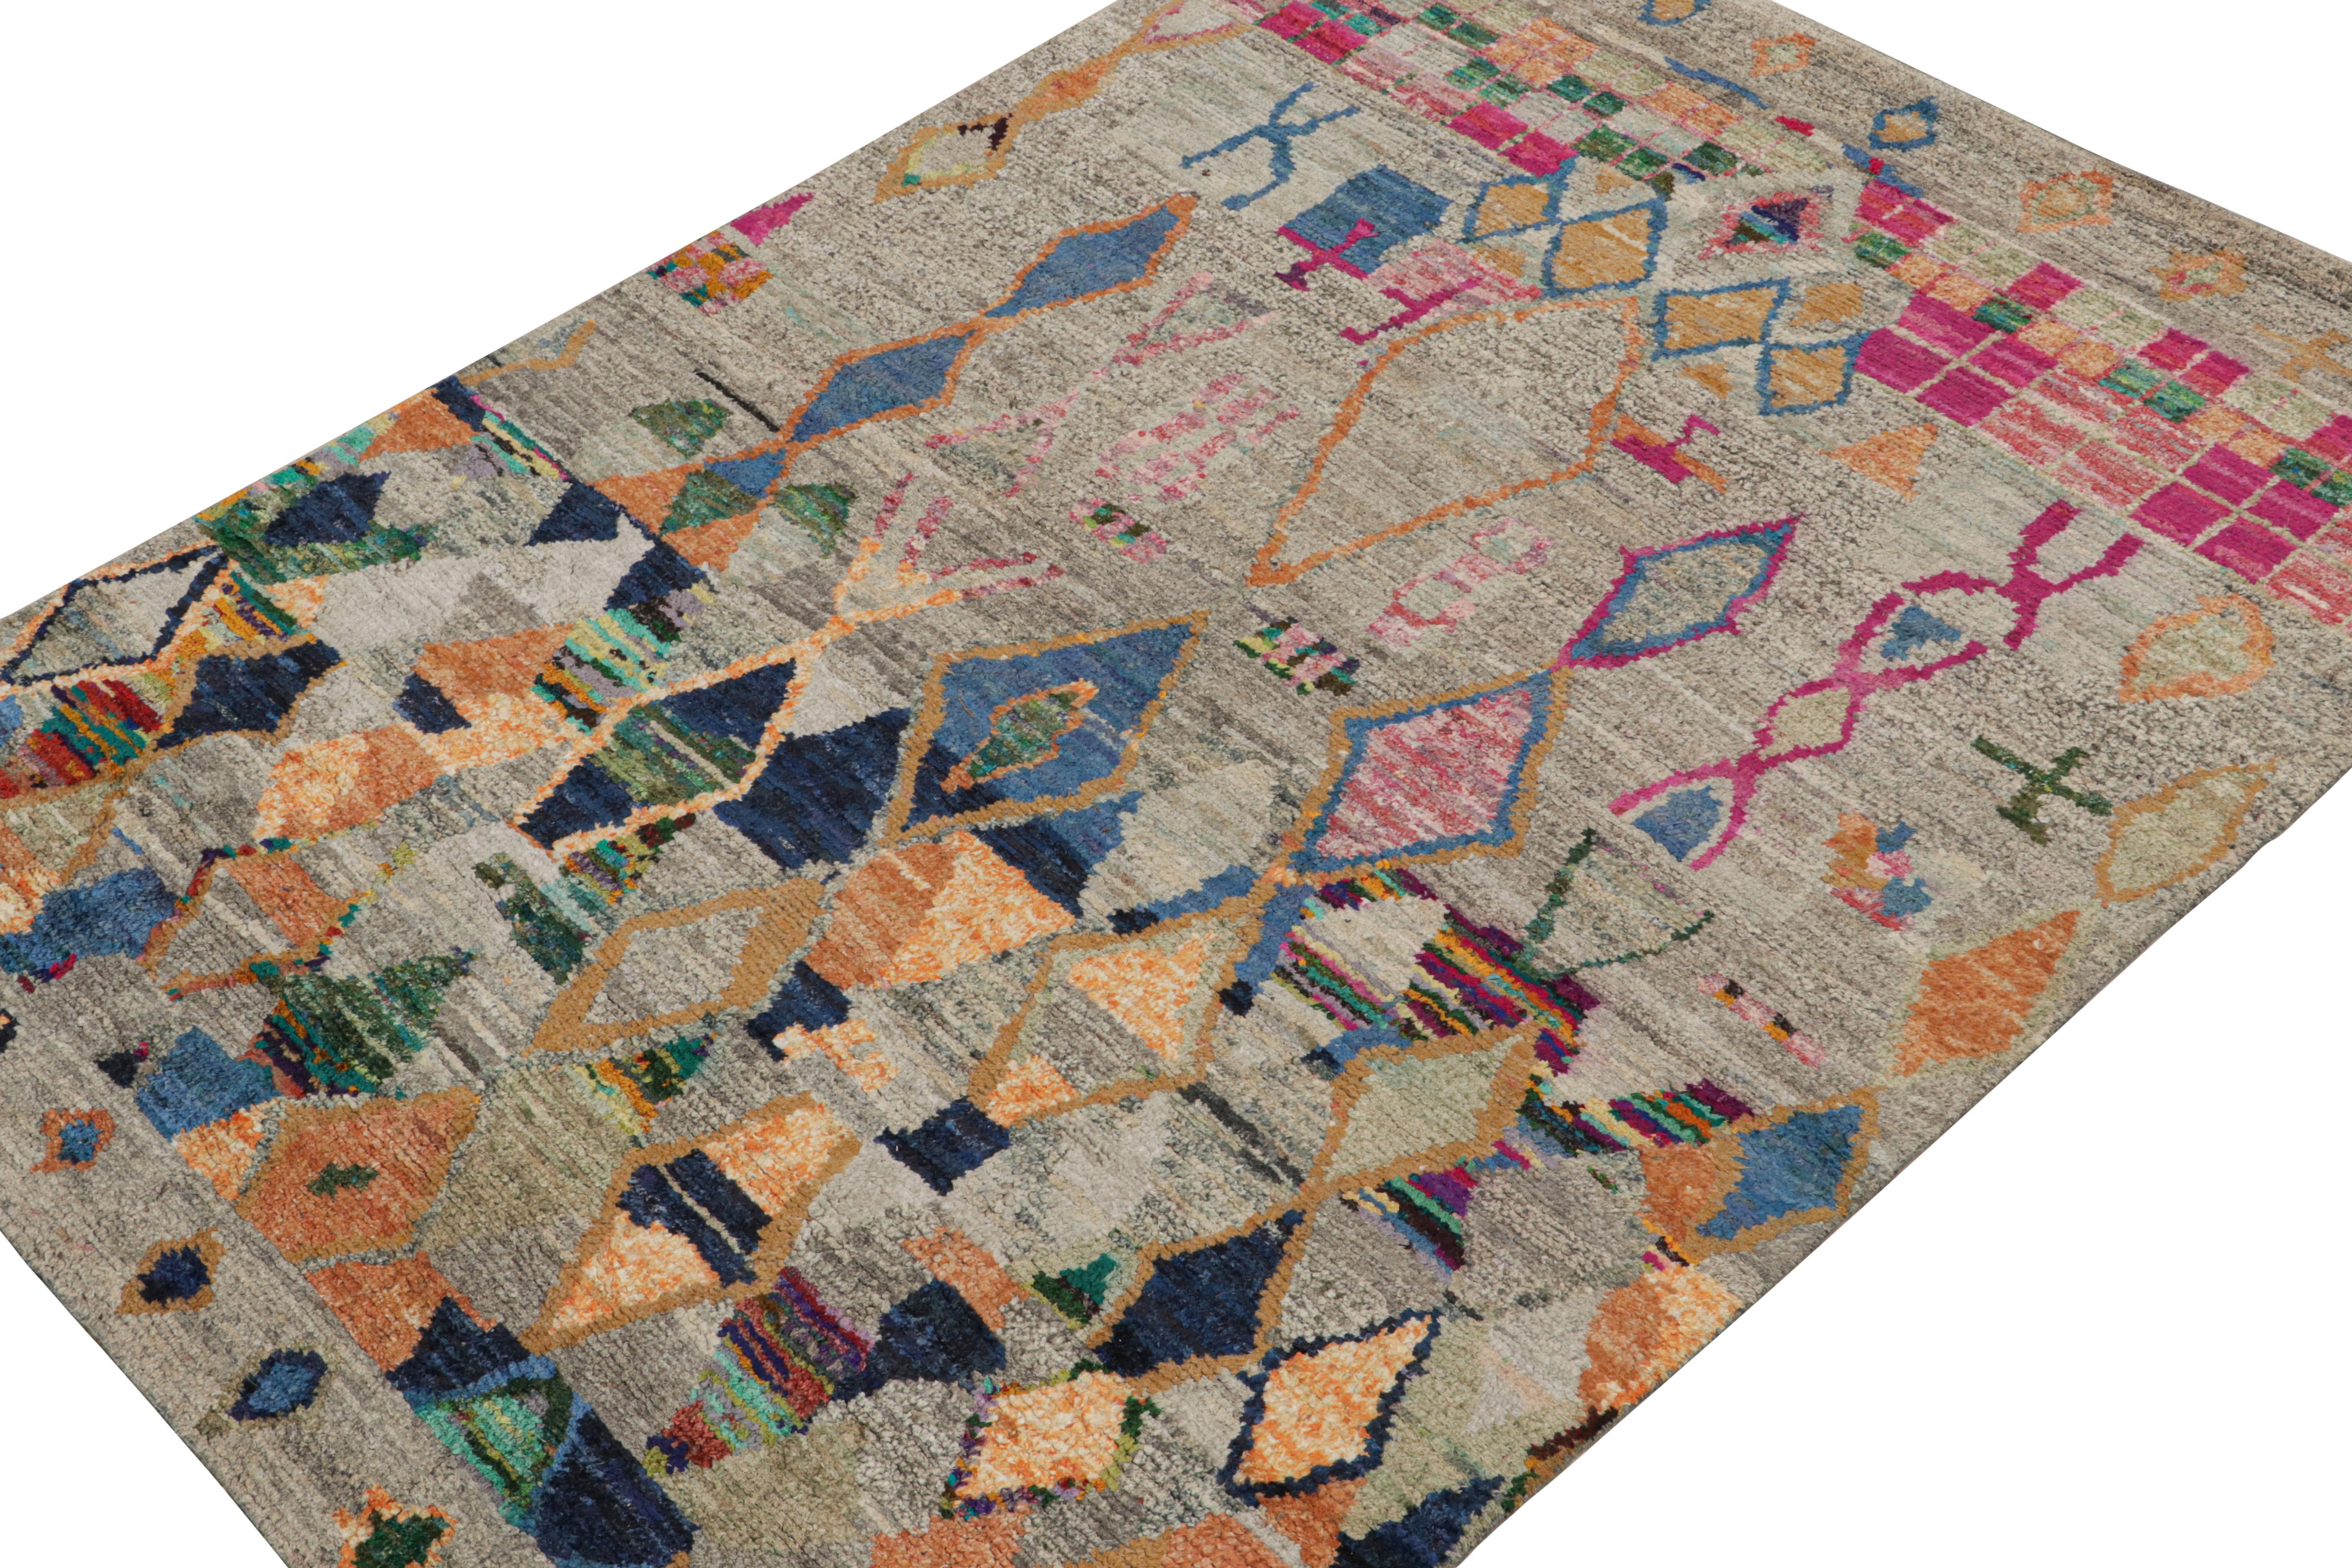 Noué à la main en laine, soie et coton, ce tapis 6x8 personnalisé est un nouvel ajout à la Collectional de Rug & Kilim. 

Sur le Design/One

Ce tapis est de style primitiviste avec des motifs dans les tons gris, bleu, rose et or. Les connaisseurs